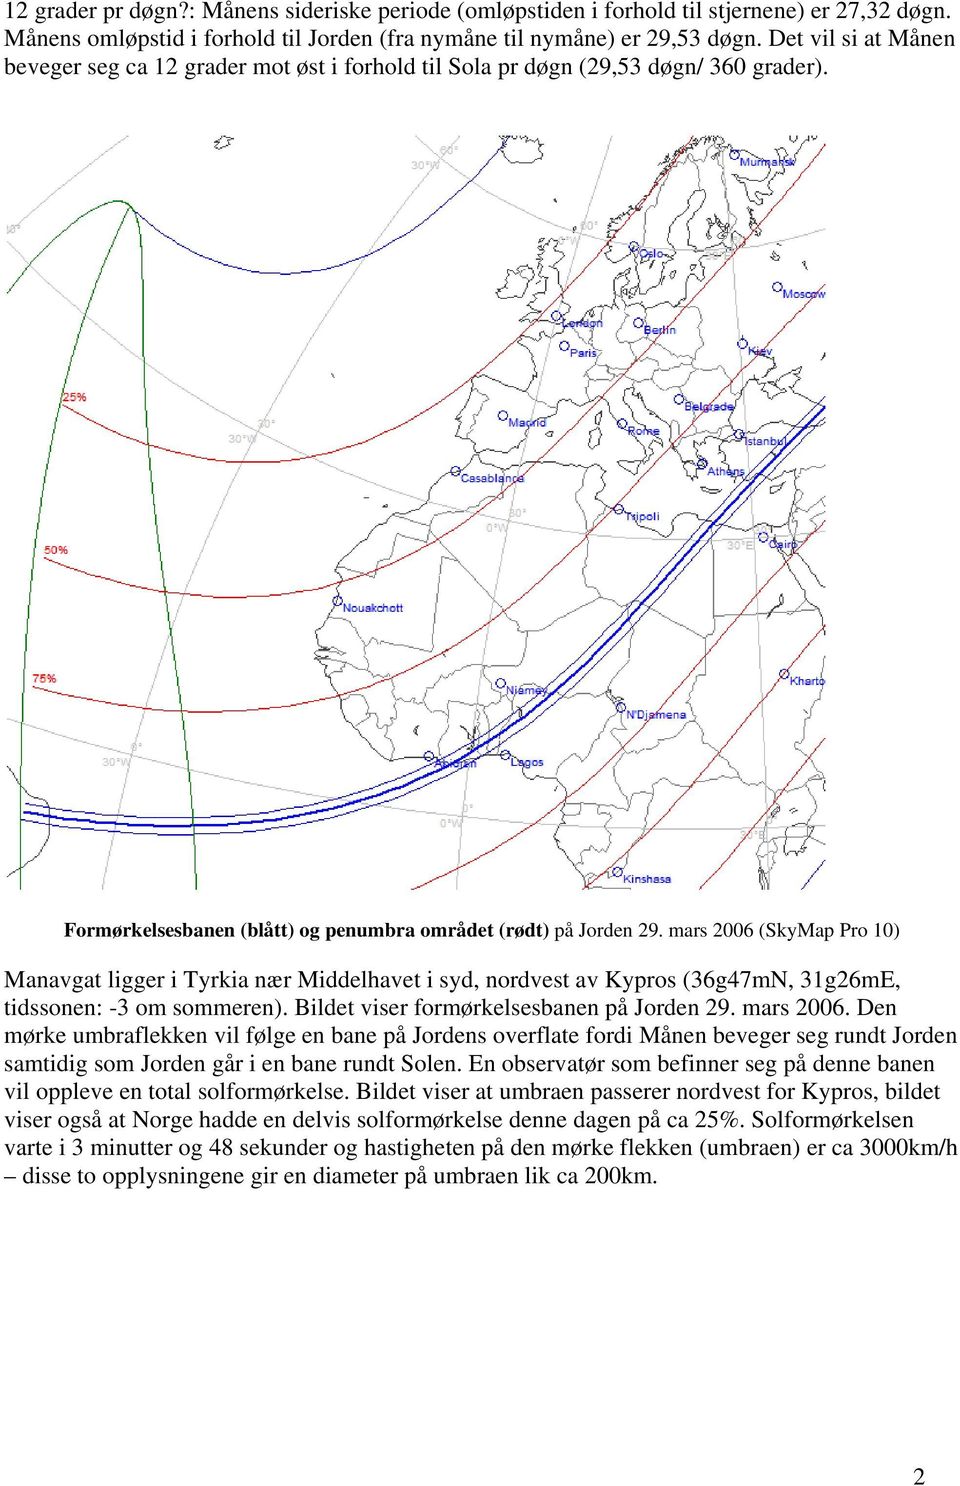 mars 2006 (SkyMap Pro 10) Manavgat ligger i Tyrkia nær Middelhavet i syd, nordvest av Kypros (36g47mN, 31g26mE, tidssonen: -3 om sommeren). Bildet viser formørkelsesbanen på Jorden 29. mars 2006.